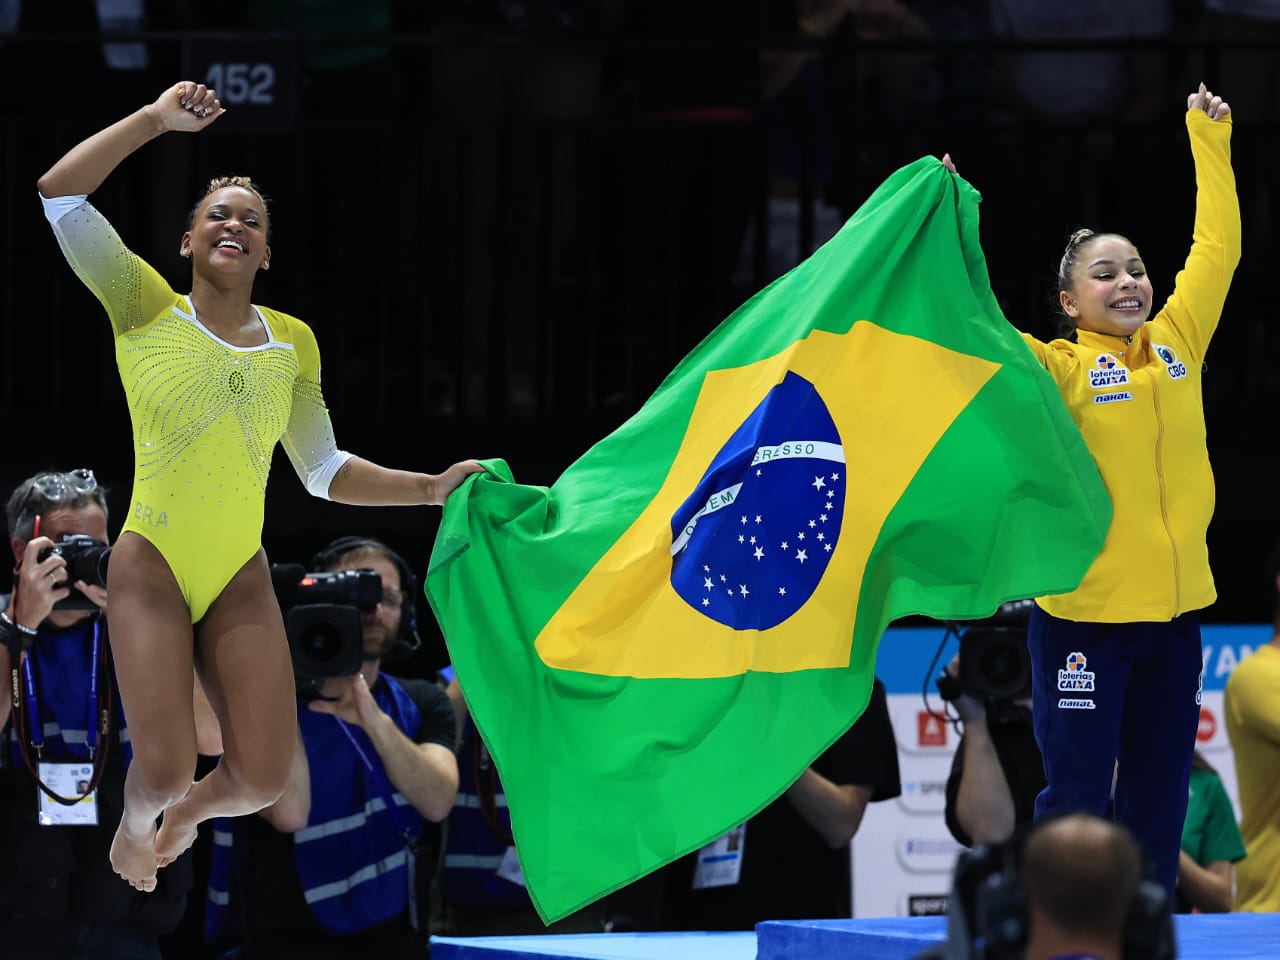 Brasil conquista a prata inédita no Mundial de Ginástica Artística sob  liderança de Rebeca Andrade - Estadão